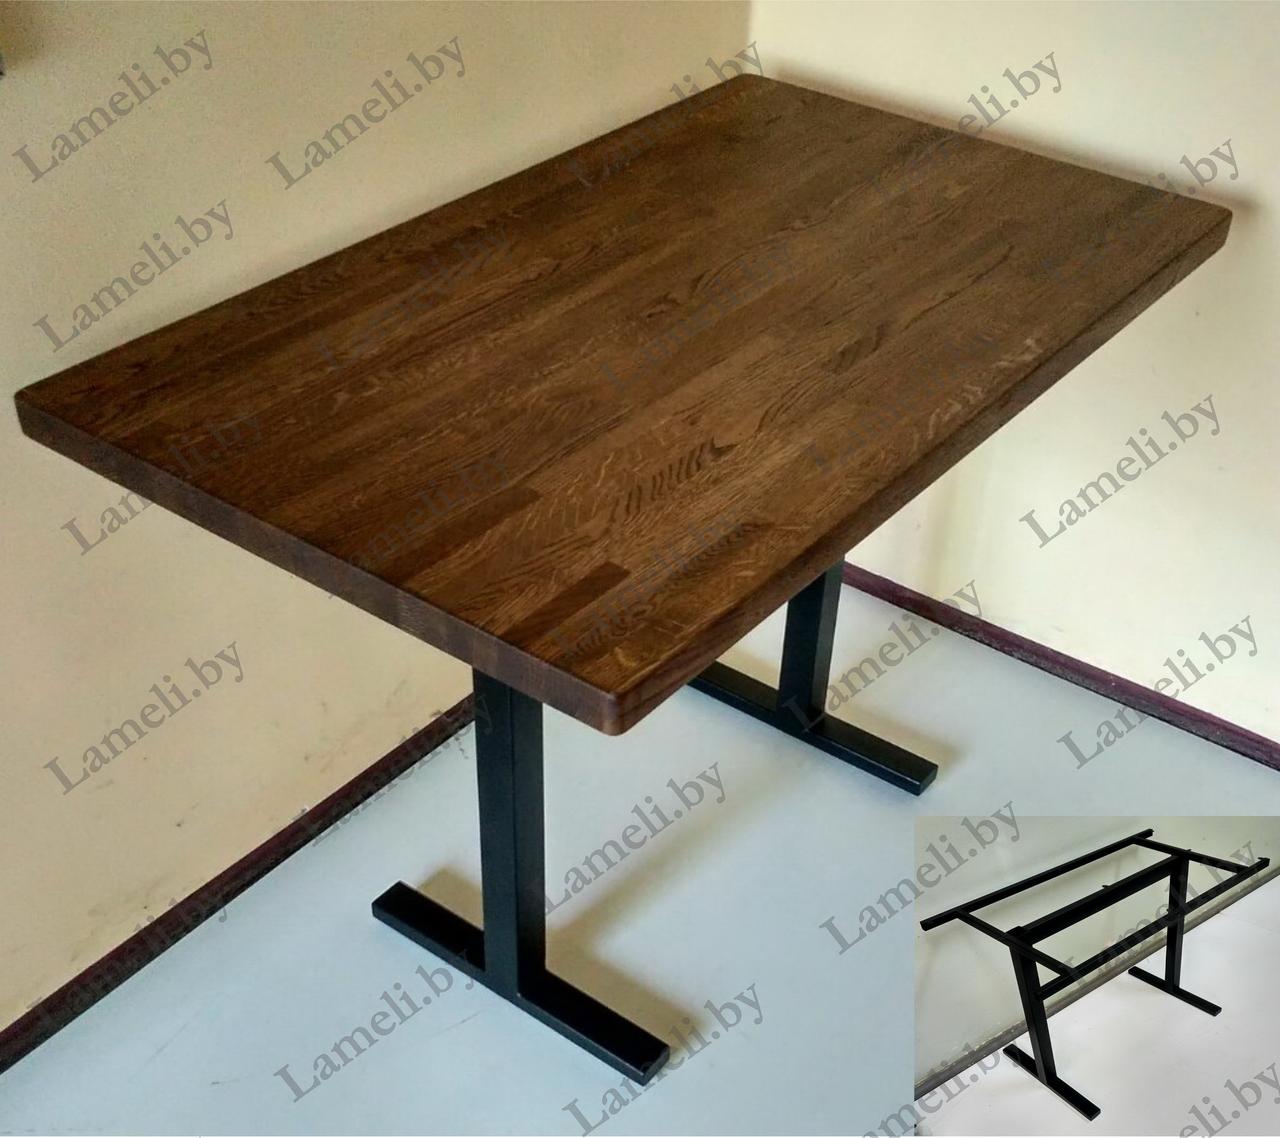 Кухонный стол на удобном металлокаркасе серии "Н" из постформинга, массива дуба или ЛДСП с выбором раз